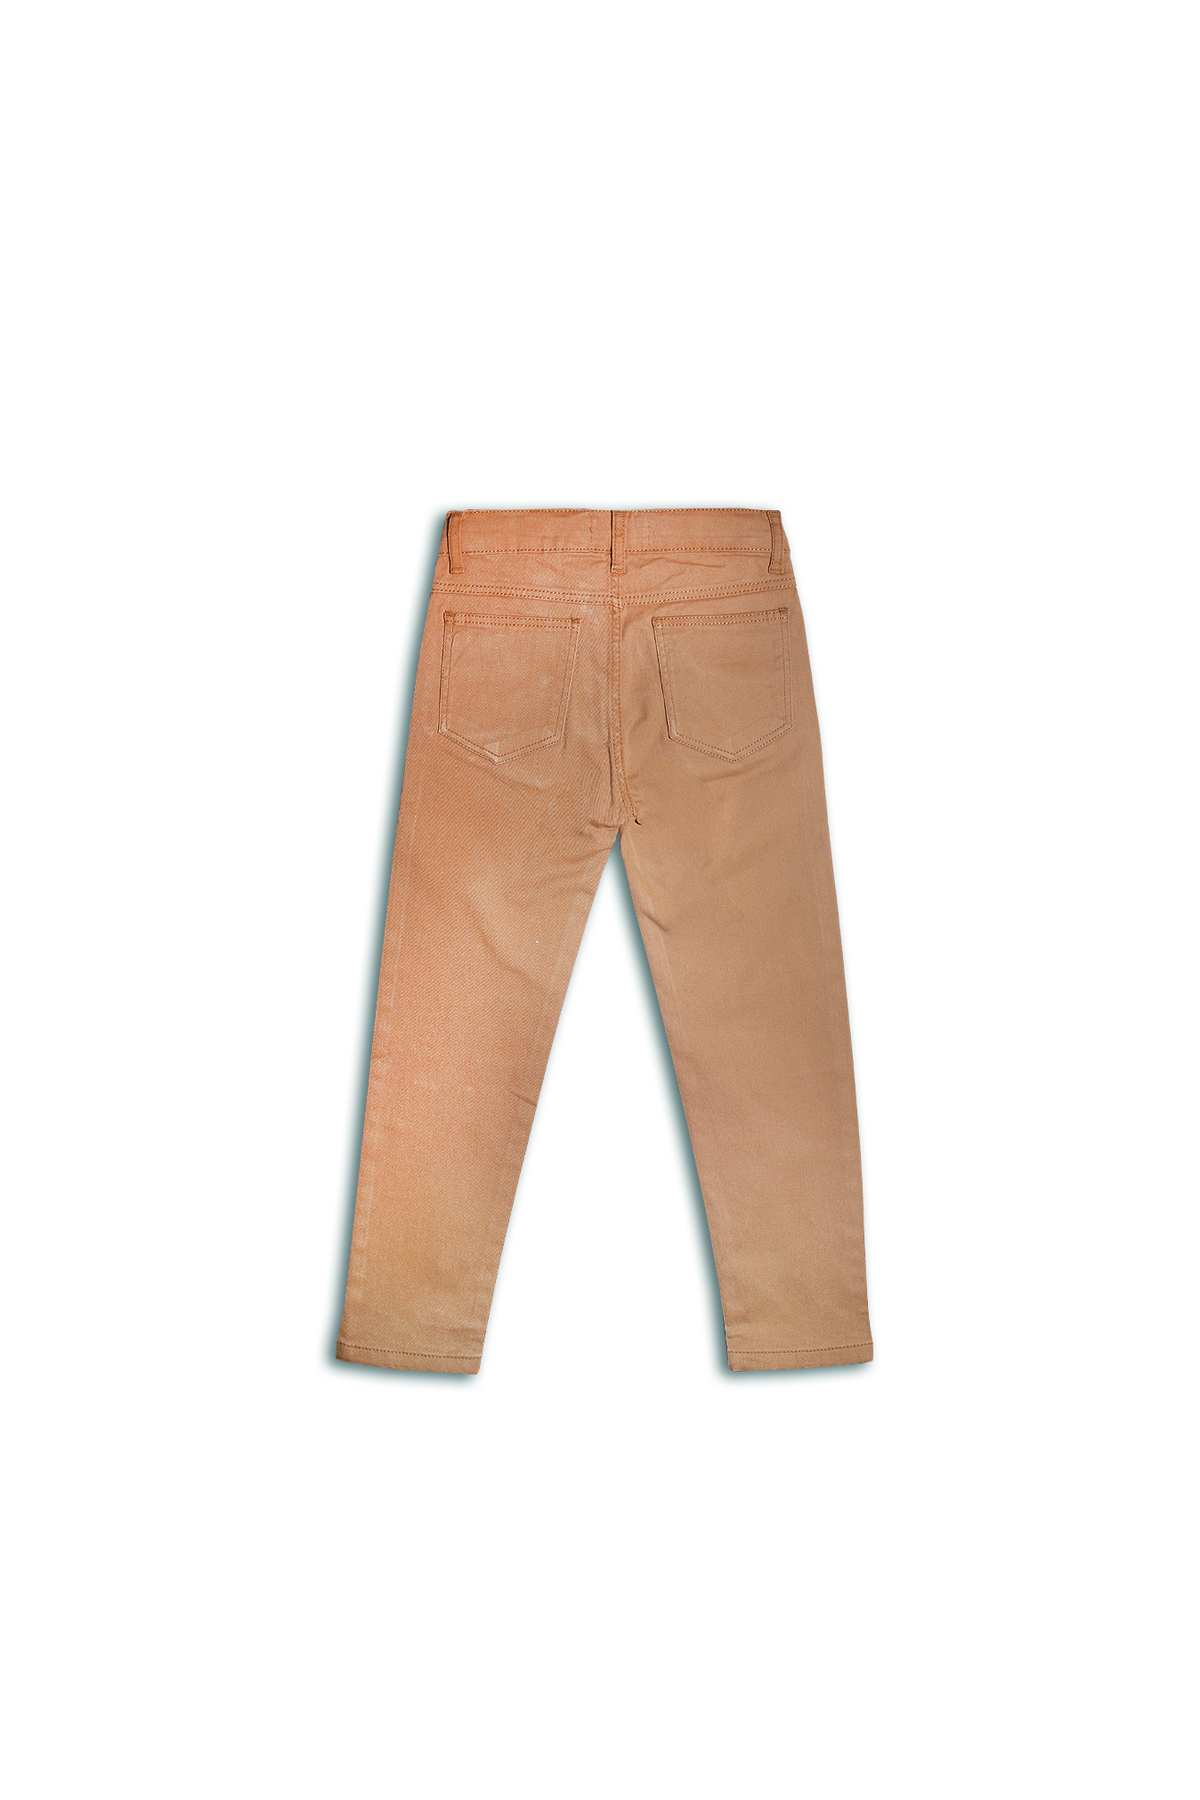 Slim Fit Pants (BT-551)